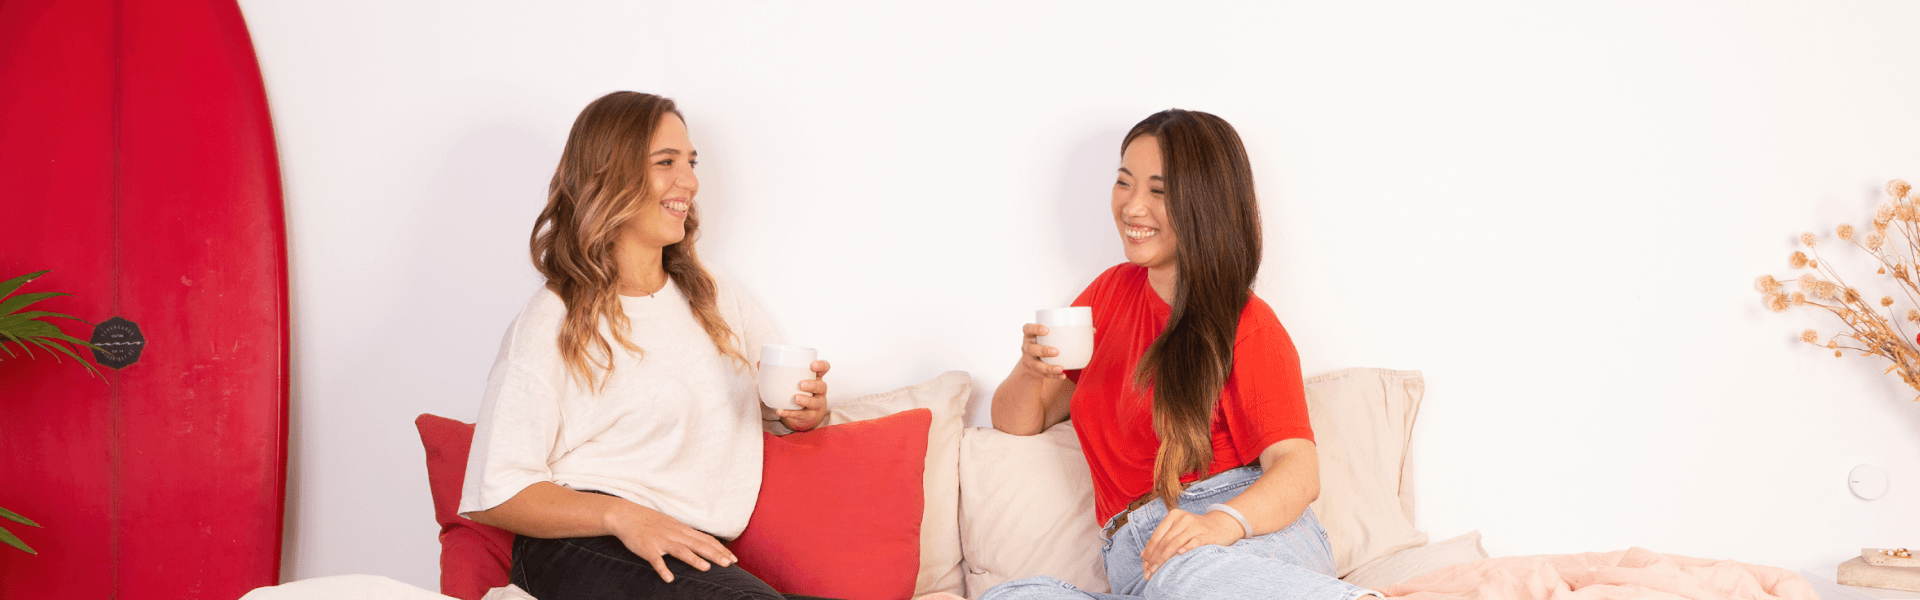 two women drinking tea